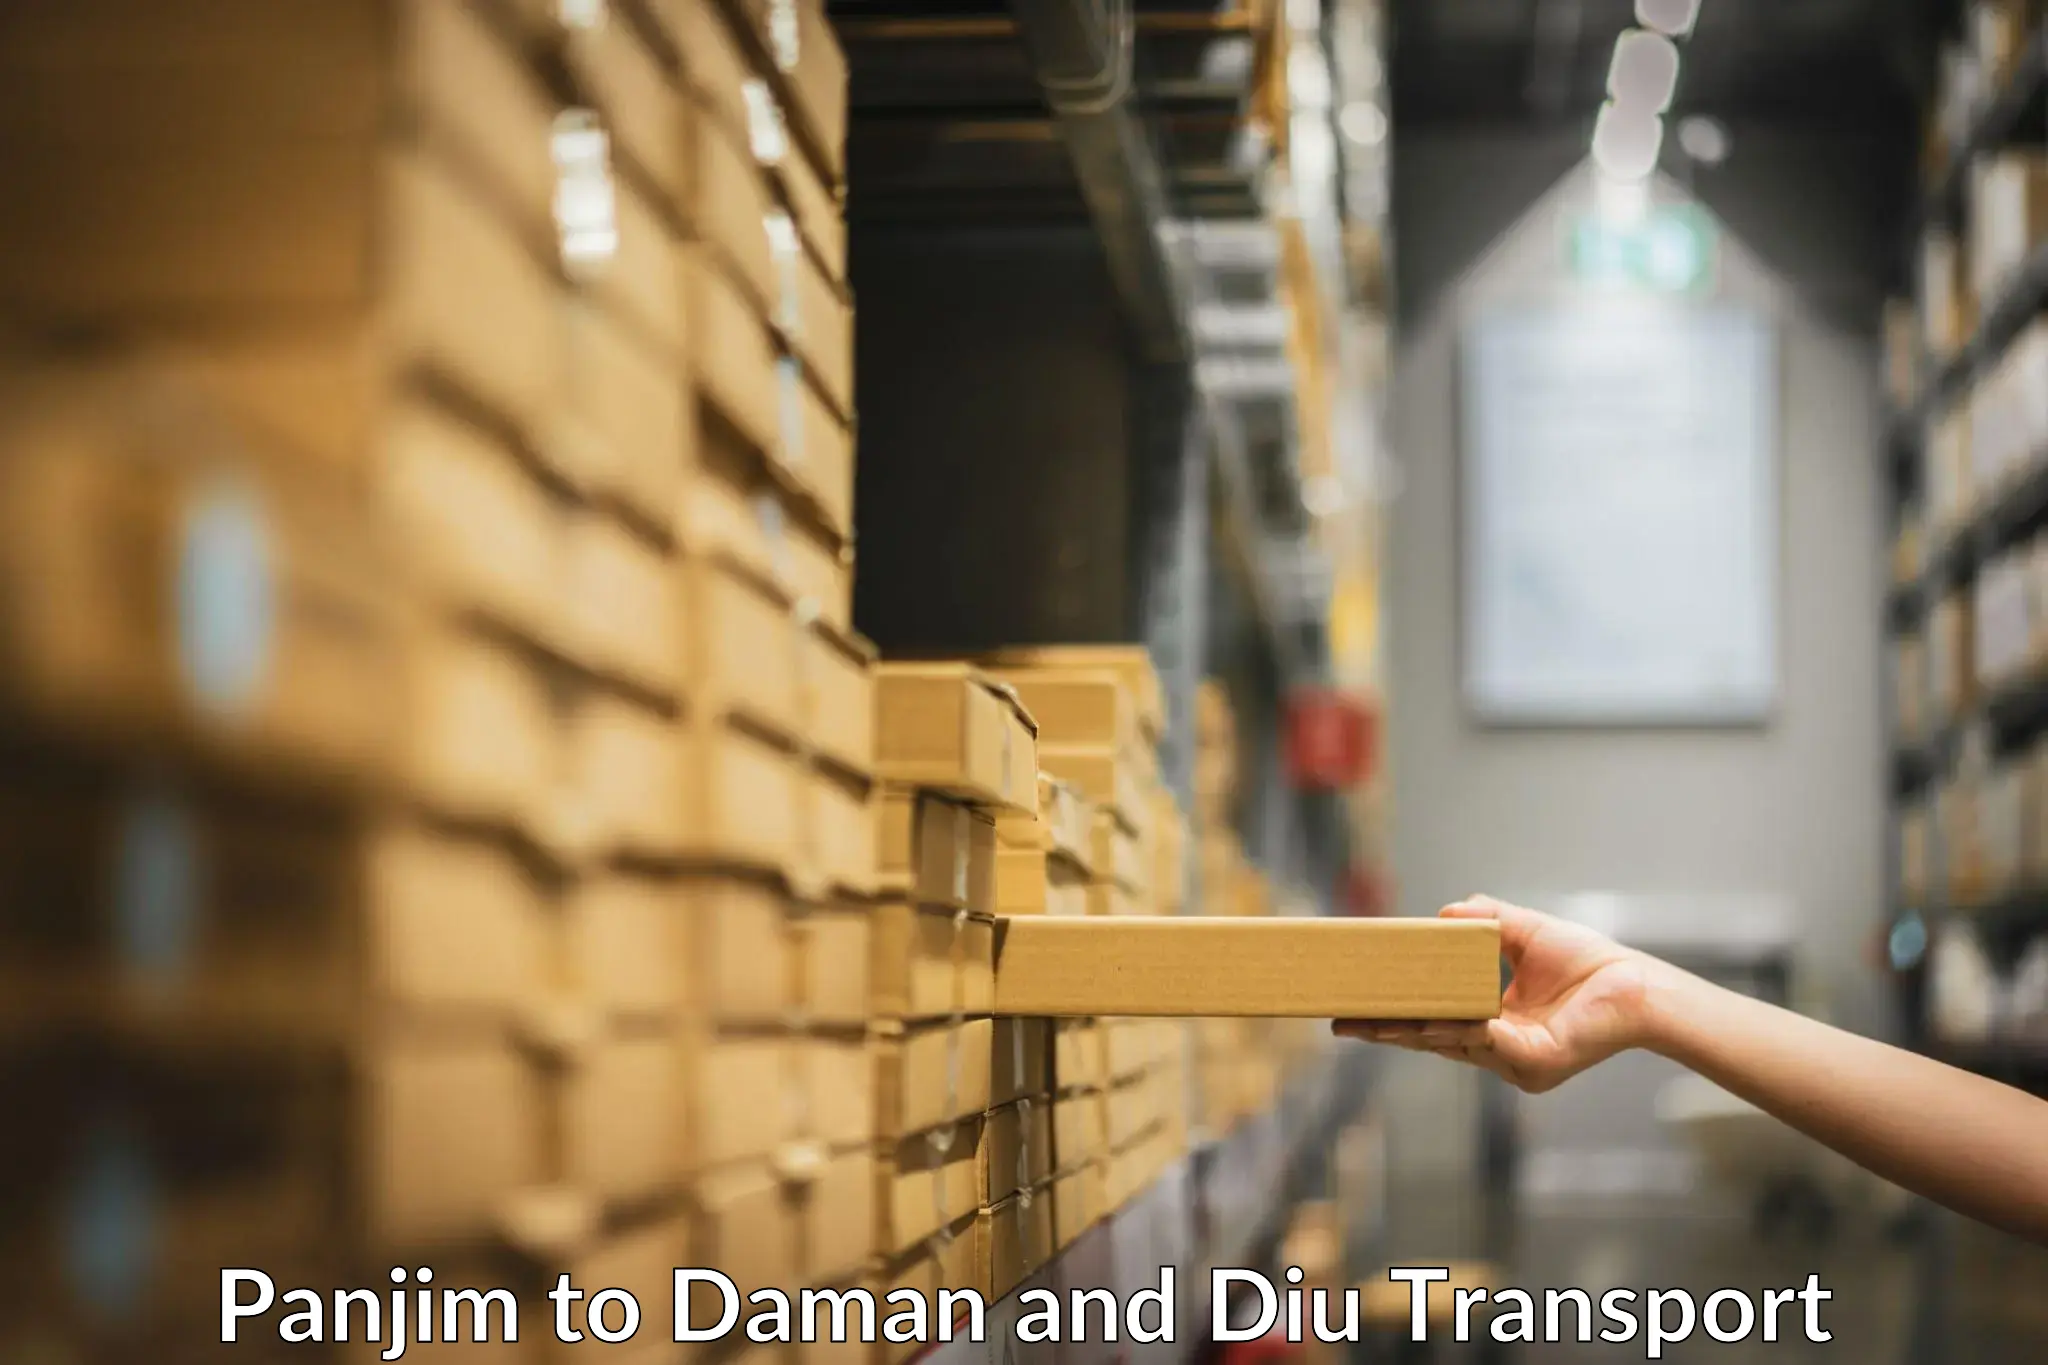 Container transport service Panjim to Daman and Diu